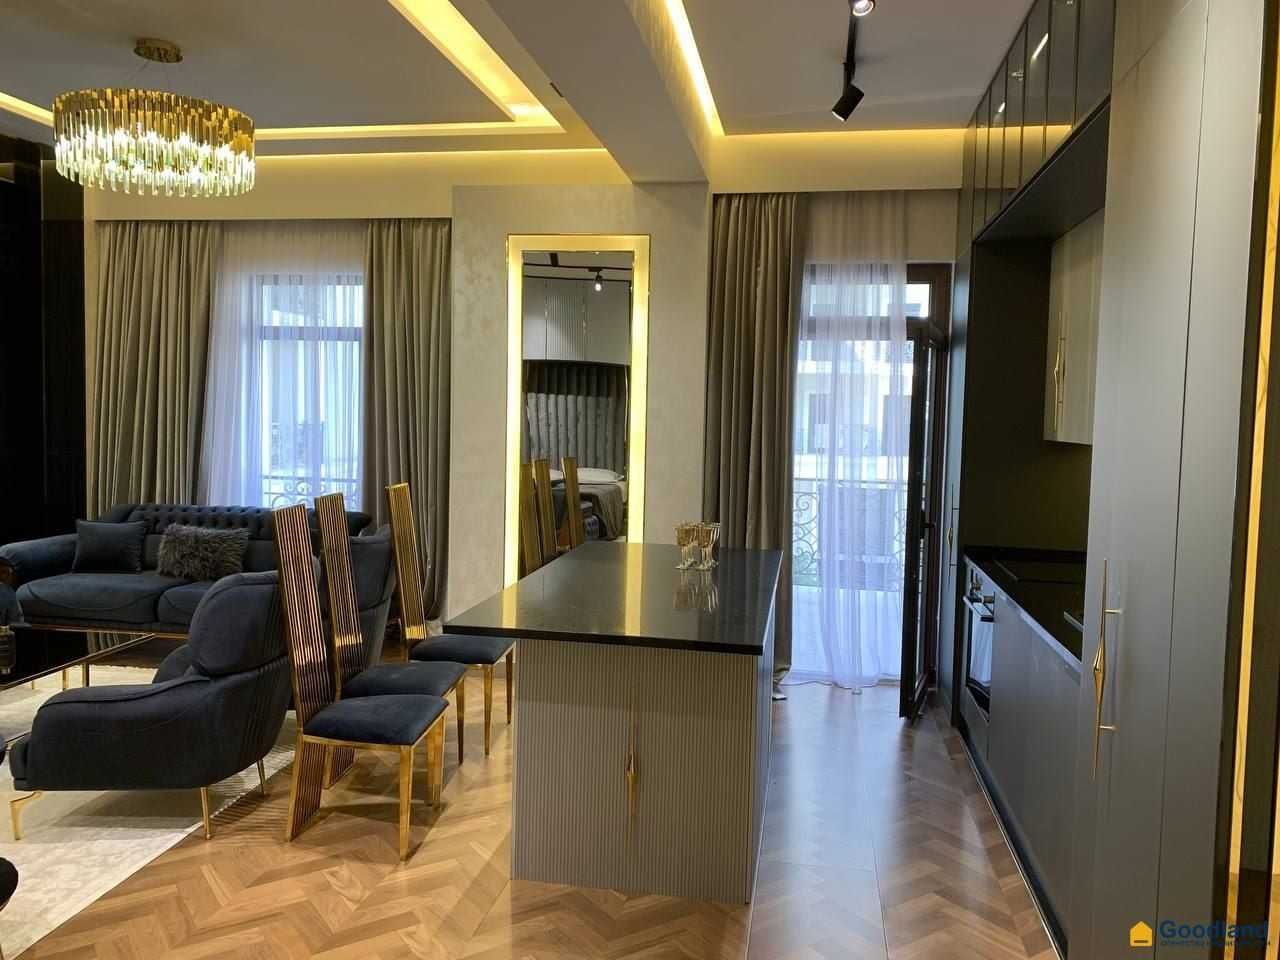 Продается квартира в ЖК “BOULEVARD” Ташкент сити 70 кв.м. 3/3/7 "J189"